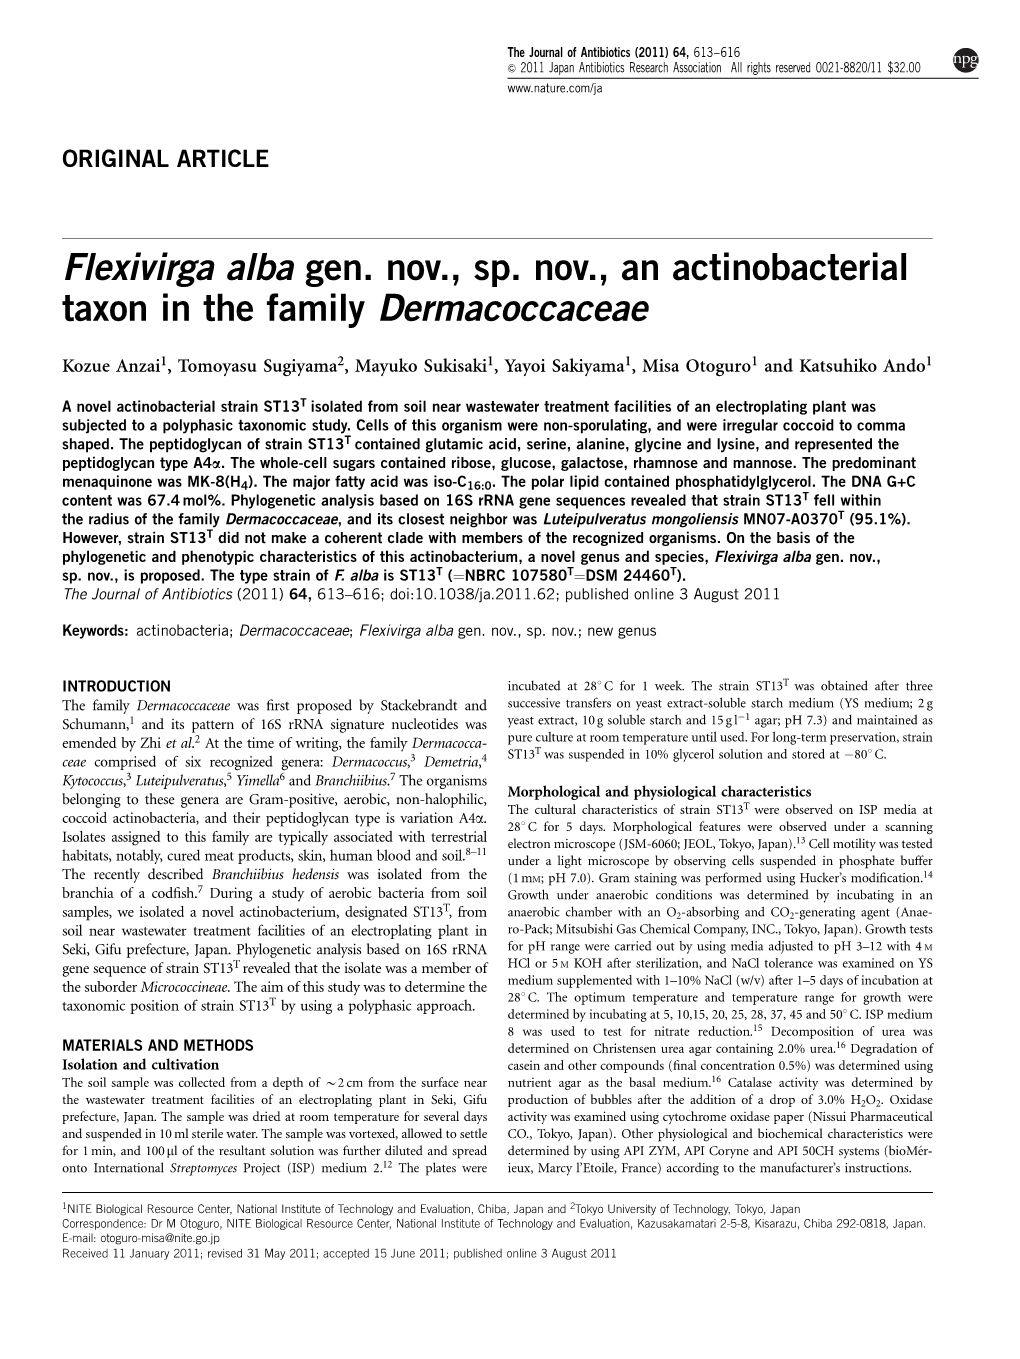 Flexivirga Alba Gen. Nov., Sp. Nov., an Actinobacterial Taxon in the Family